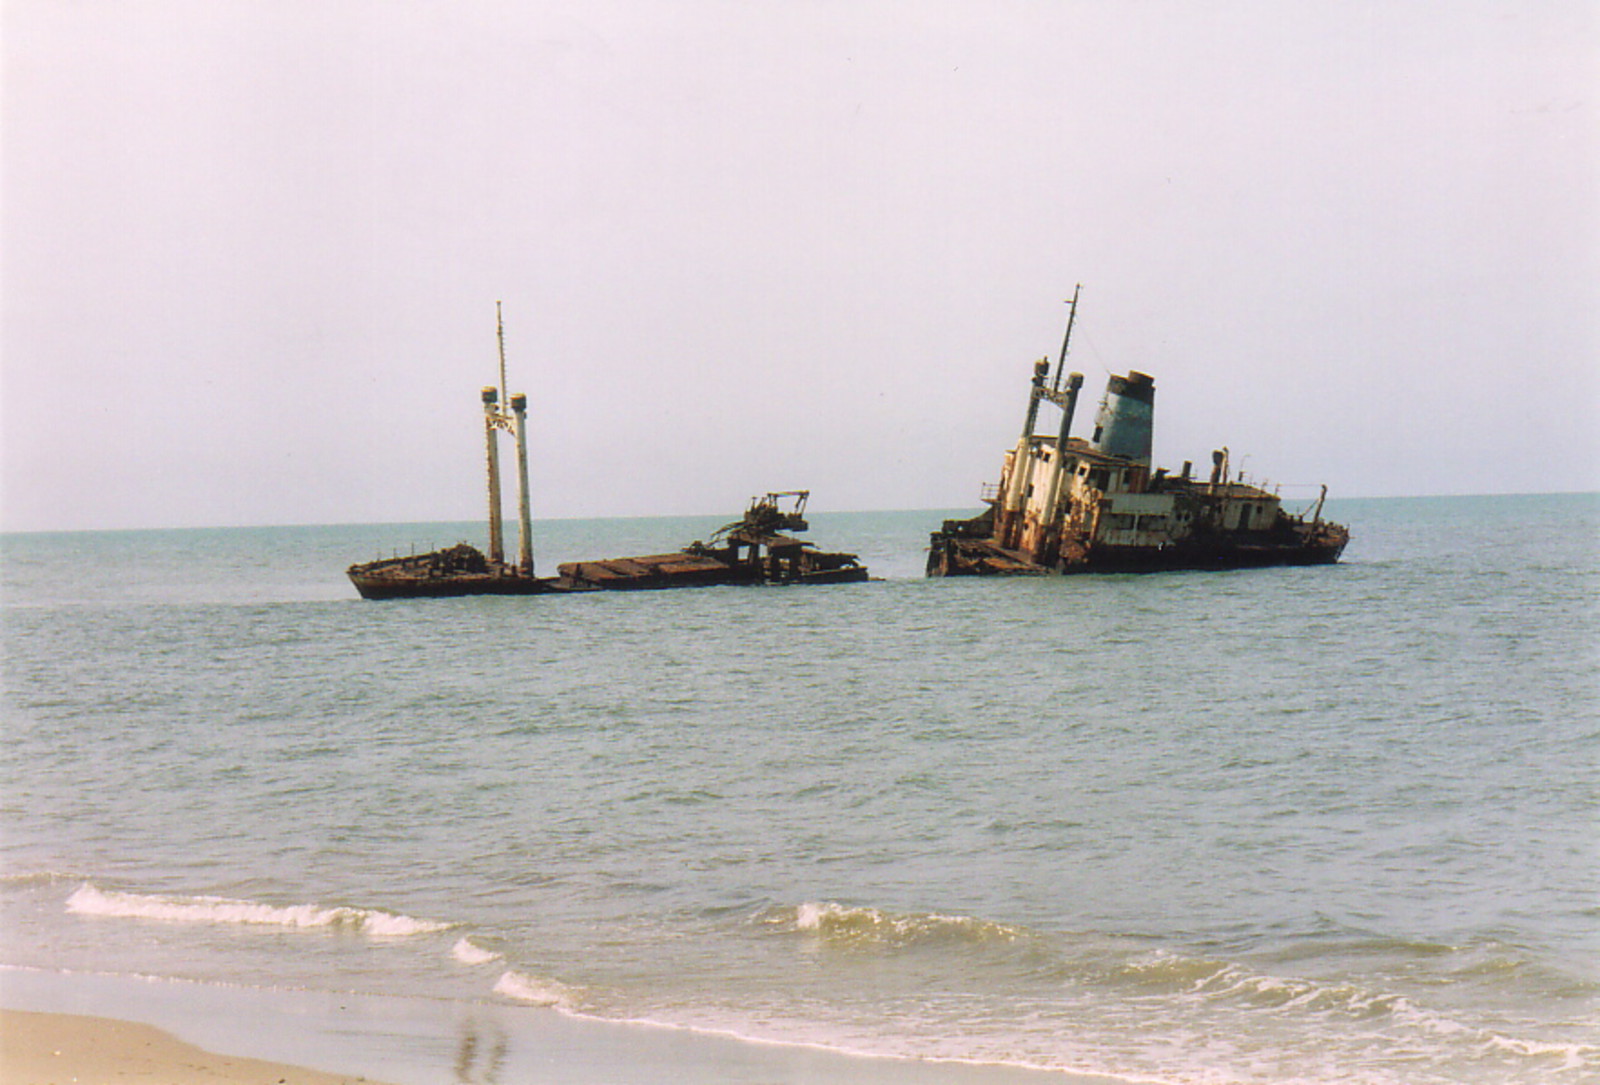 A beached ship off Palmarin beach